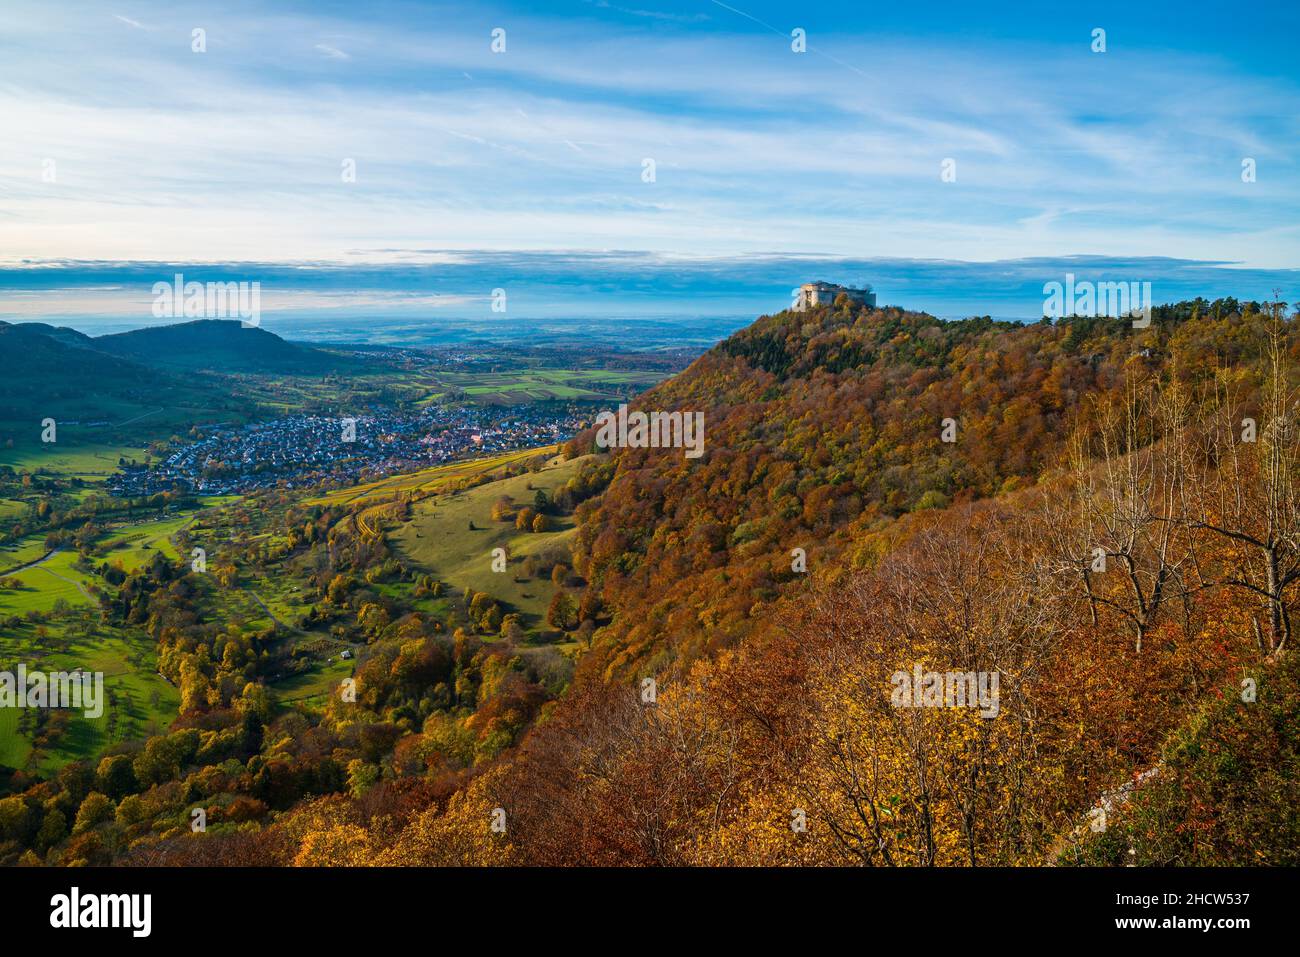 Alemania, Hohenneufen ruinas del castillo de swabian alb en la cima de una montaña en neuffen en otoño al atardecer Foto de stock